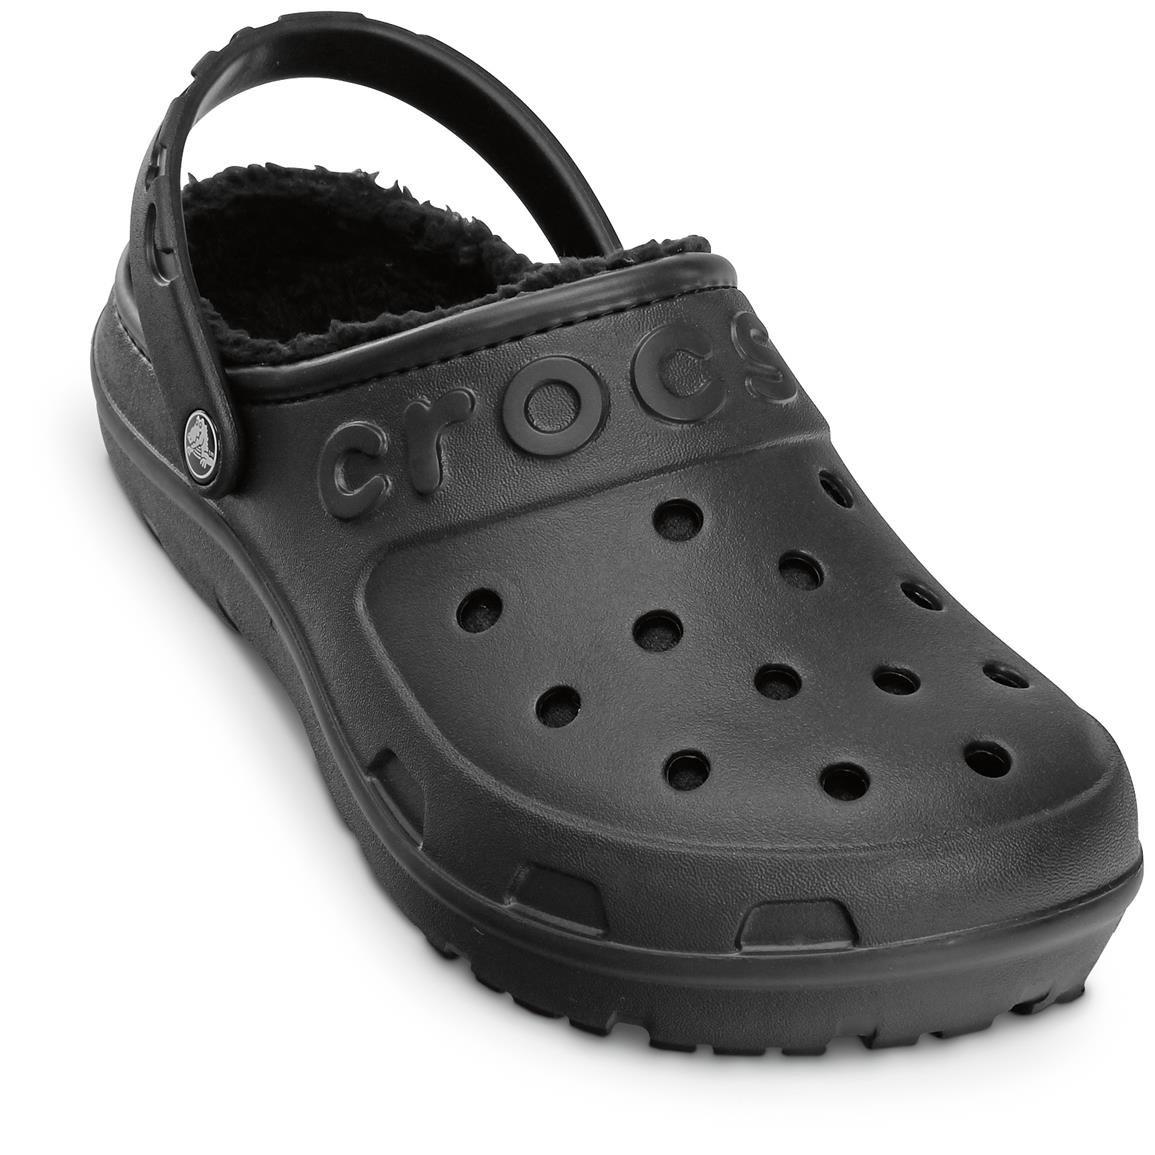 Crocs Men's Hilo Lined Clogs 643770, Casual Shoes at